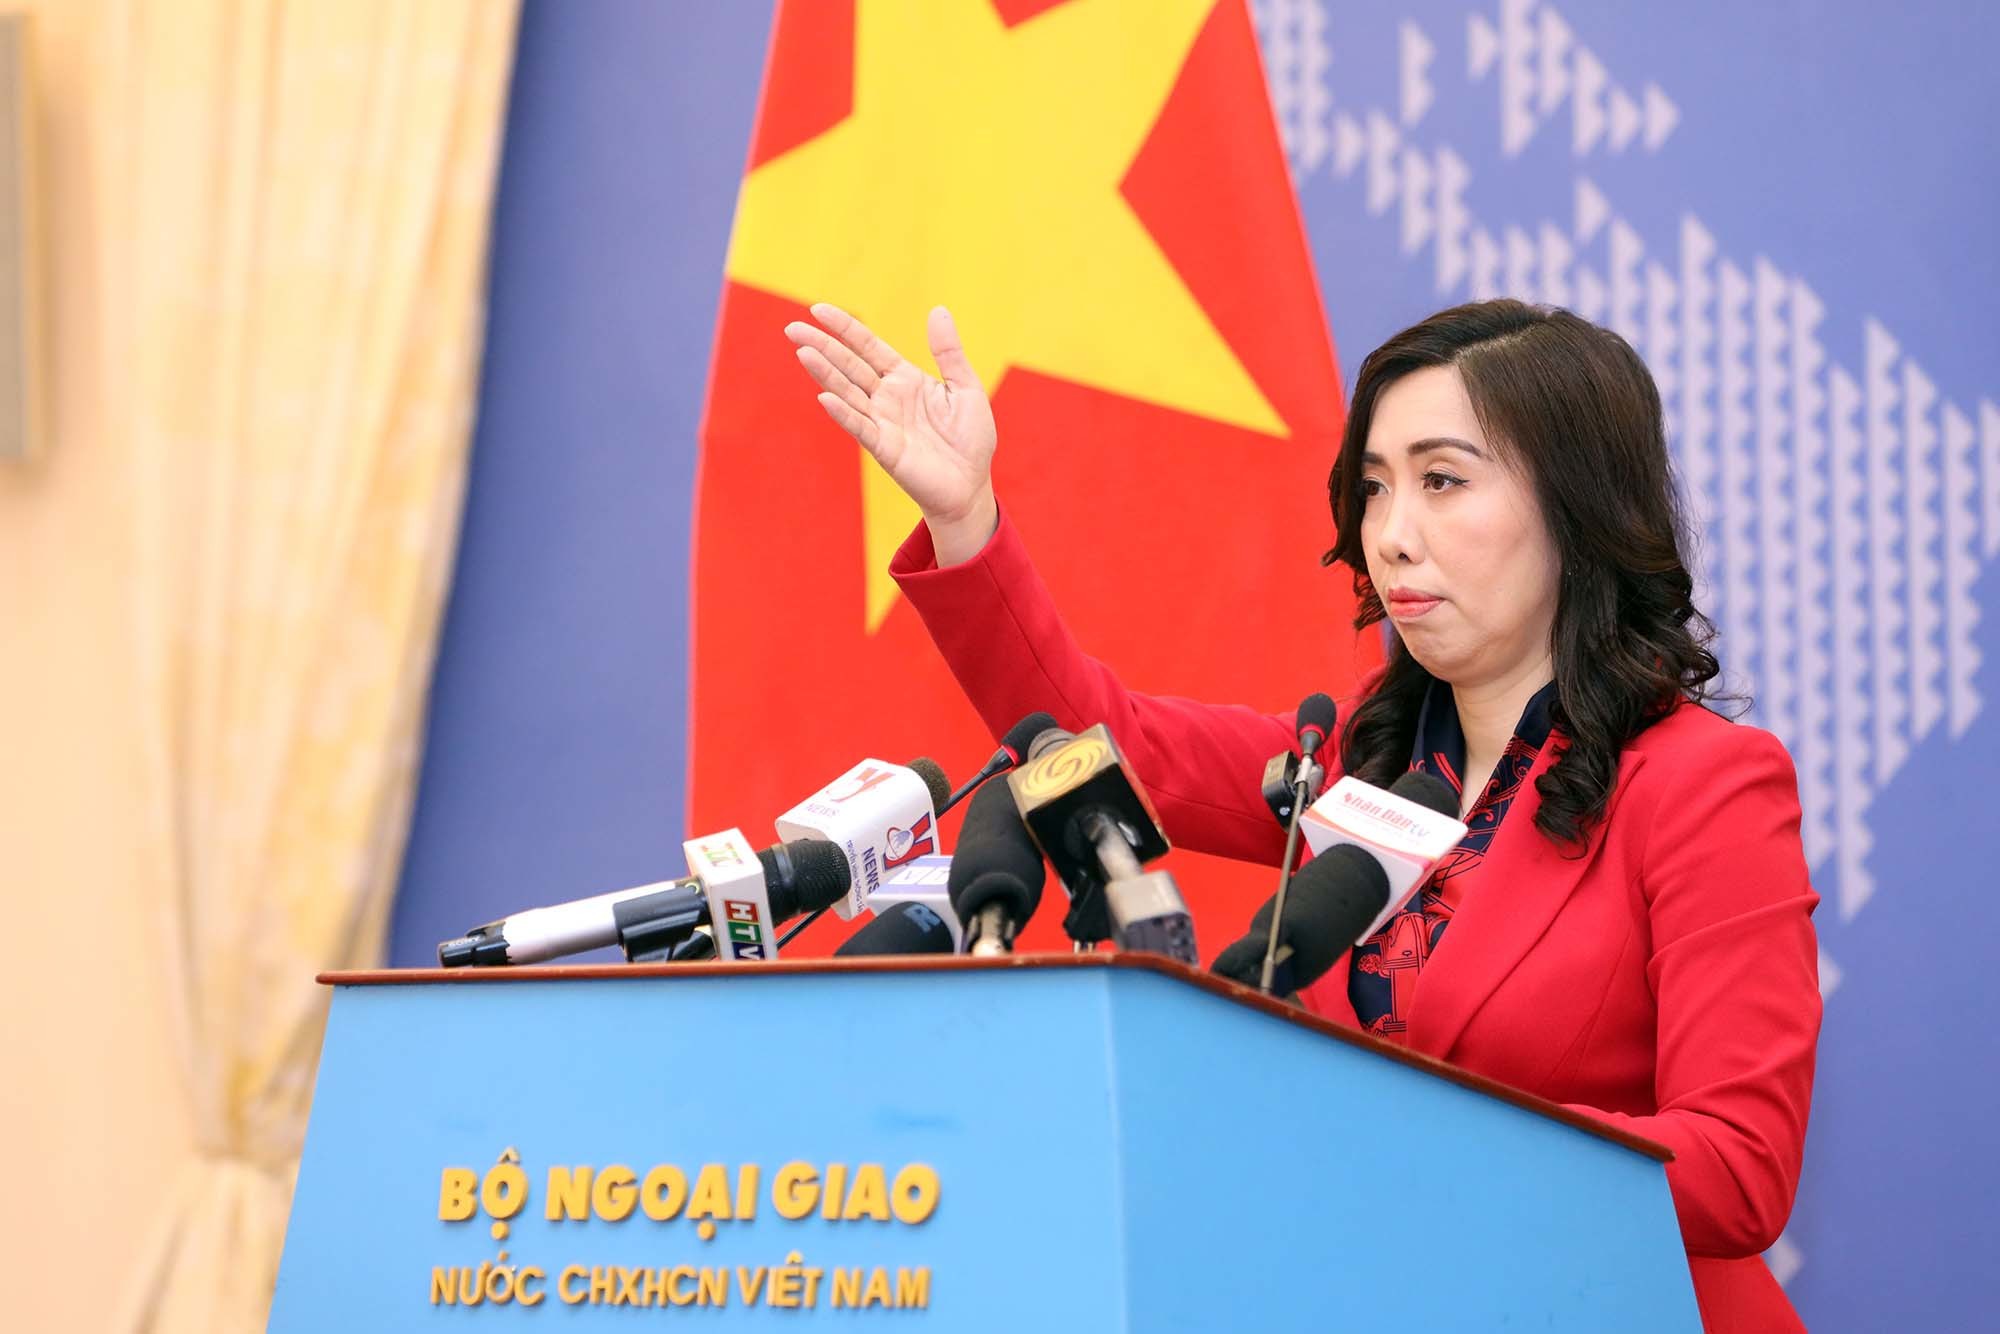 Việt Nam bác bỏ thông tin không đúng về lực lượng dân quân tự vệ biển